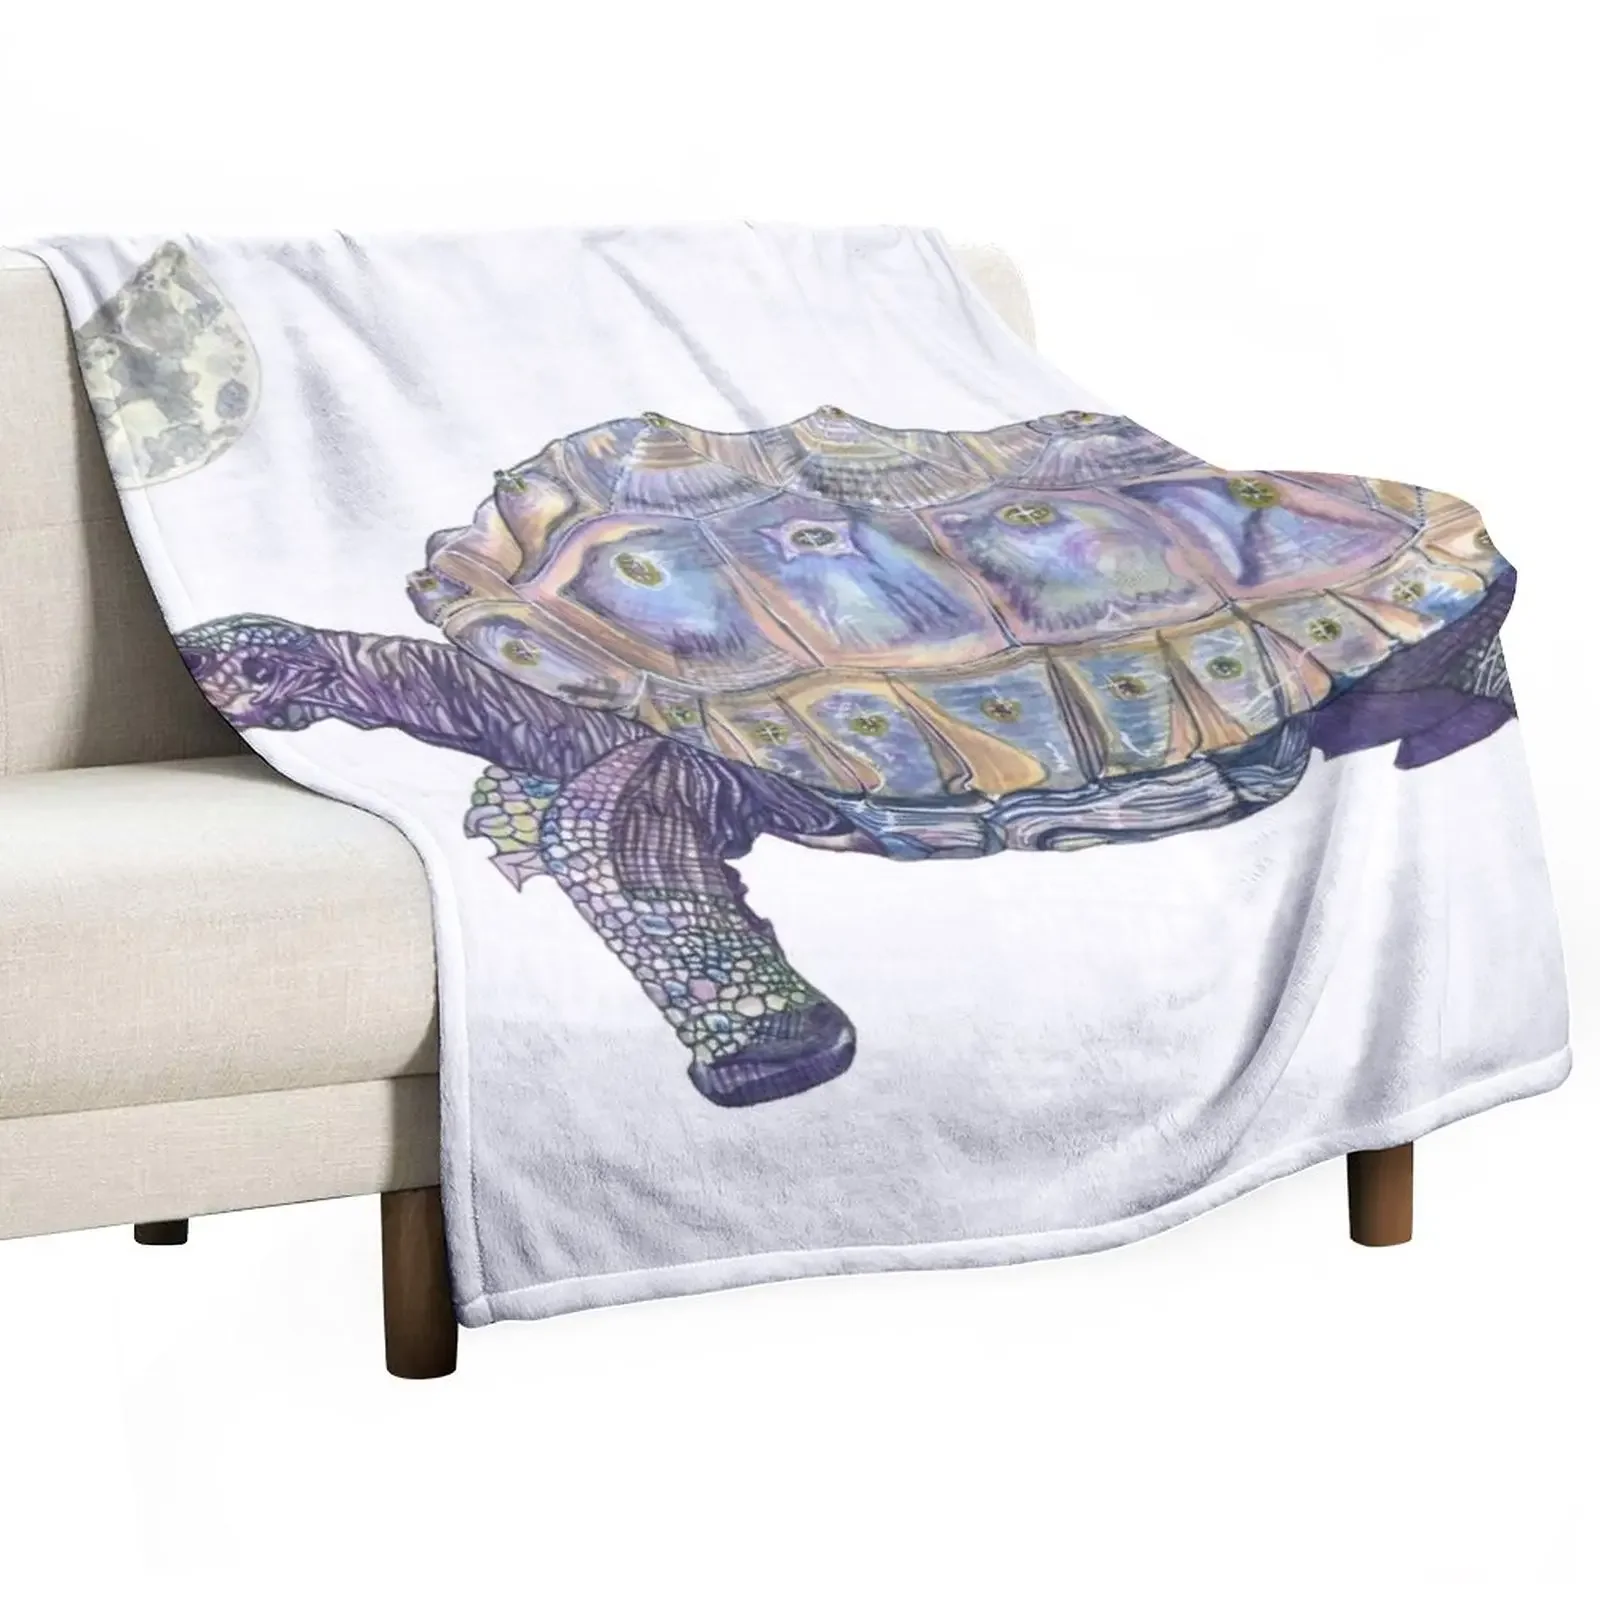 

New Tortoise Throw Blanket Sofa Quilt Luxury Designer Blankets